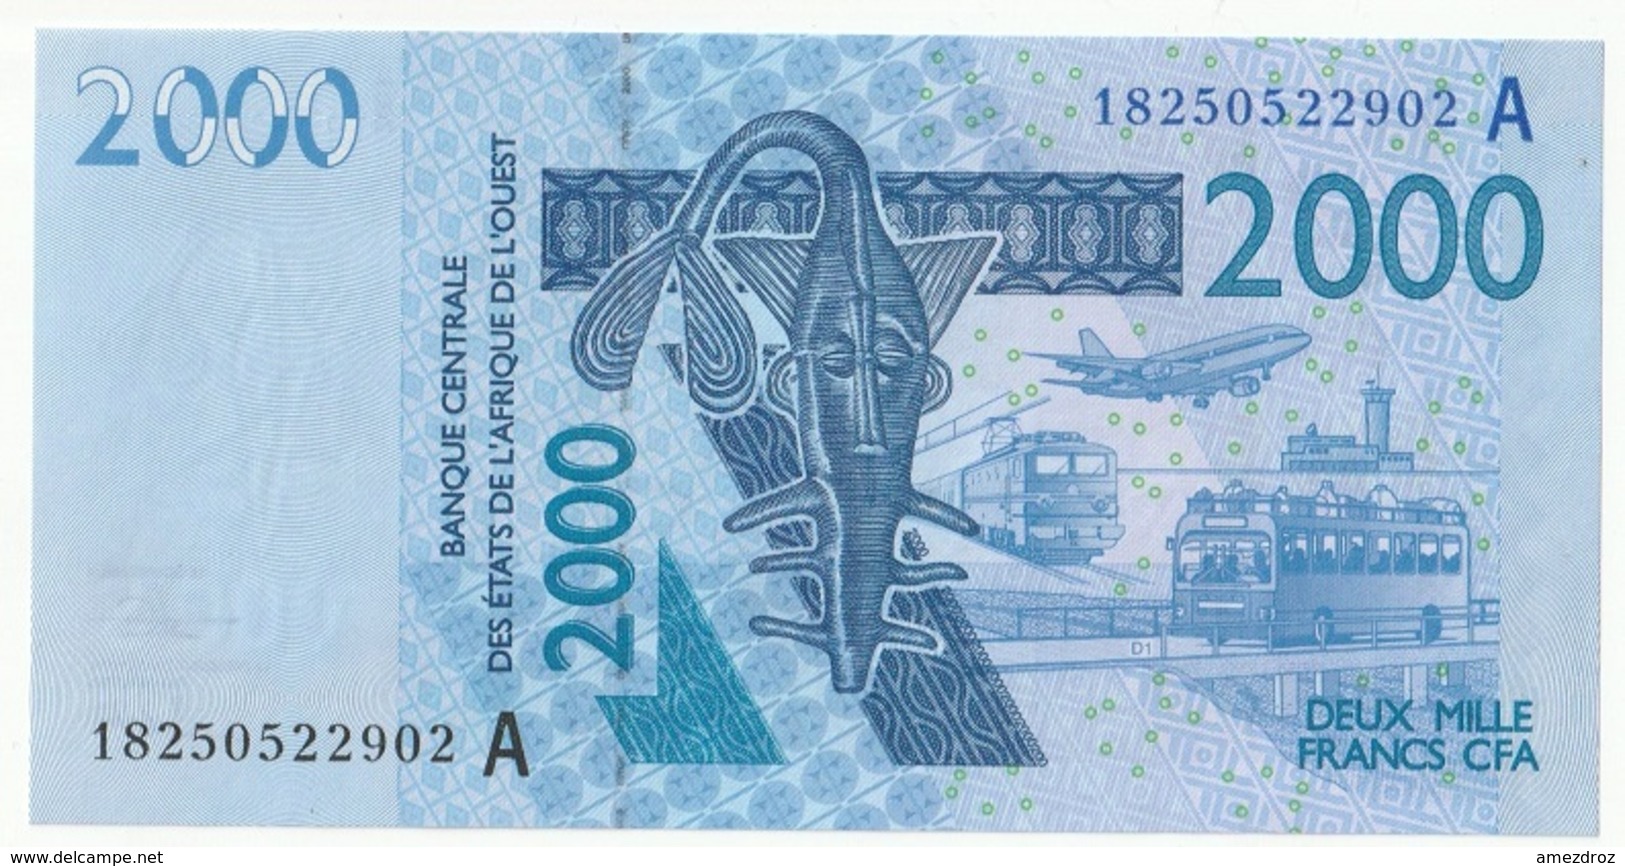 Billet De 2000 Francs CFA XOF Non Circulé Afrique De L'Ouest Origine Cote D'Ivoire - Costa D'Avorio